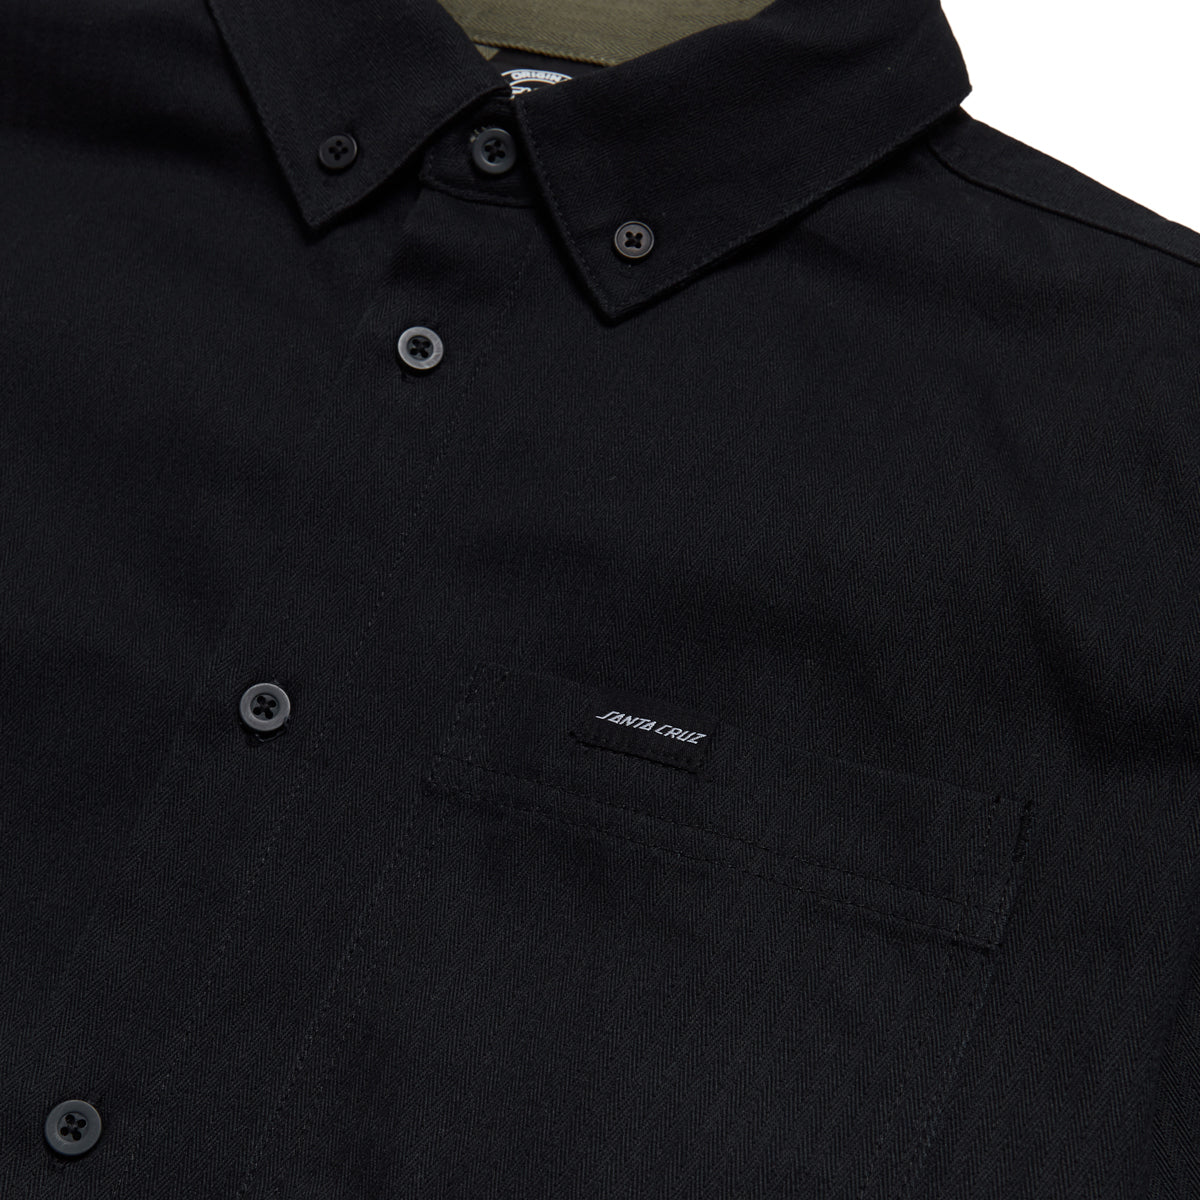 Santa Cruz Bowman Long Sleeve Work Shirt - Black image 3